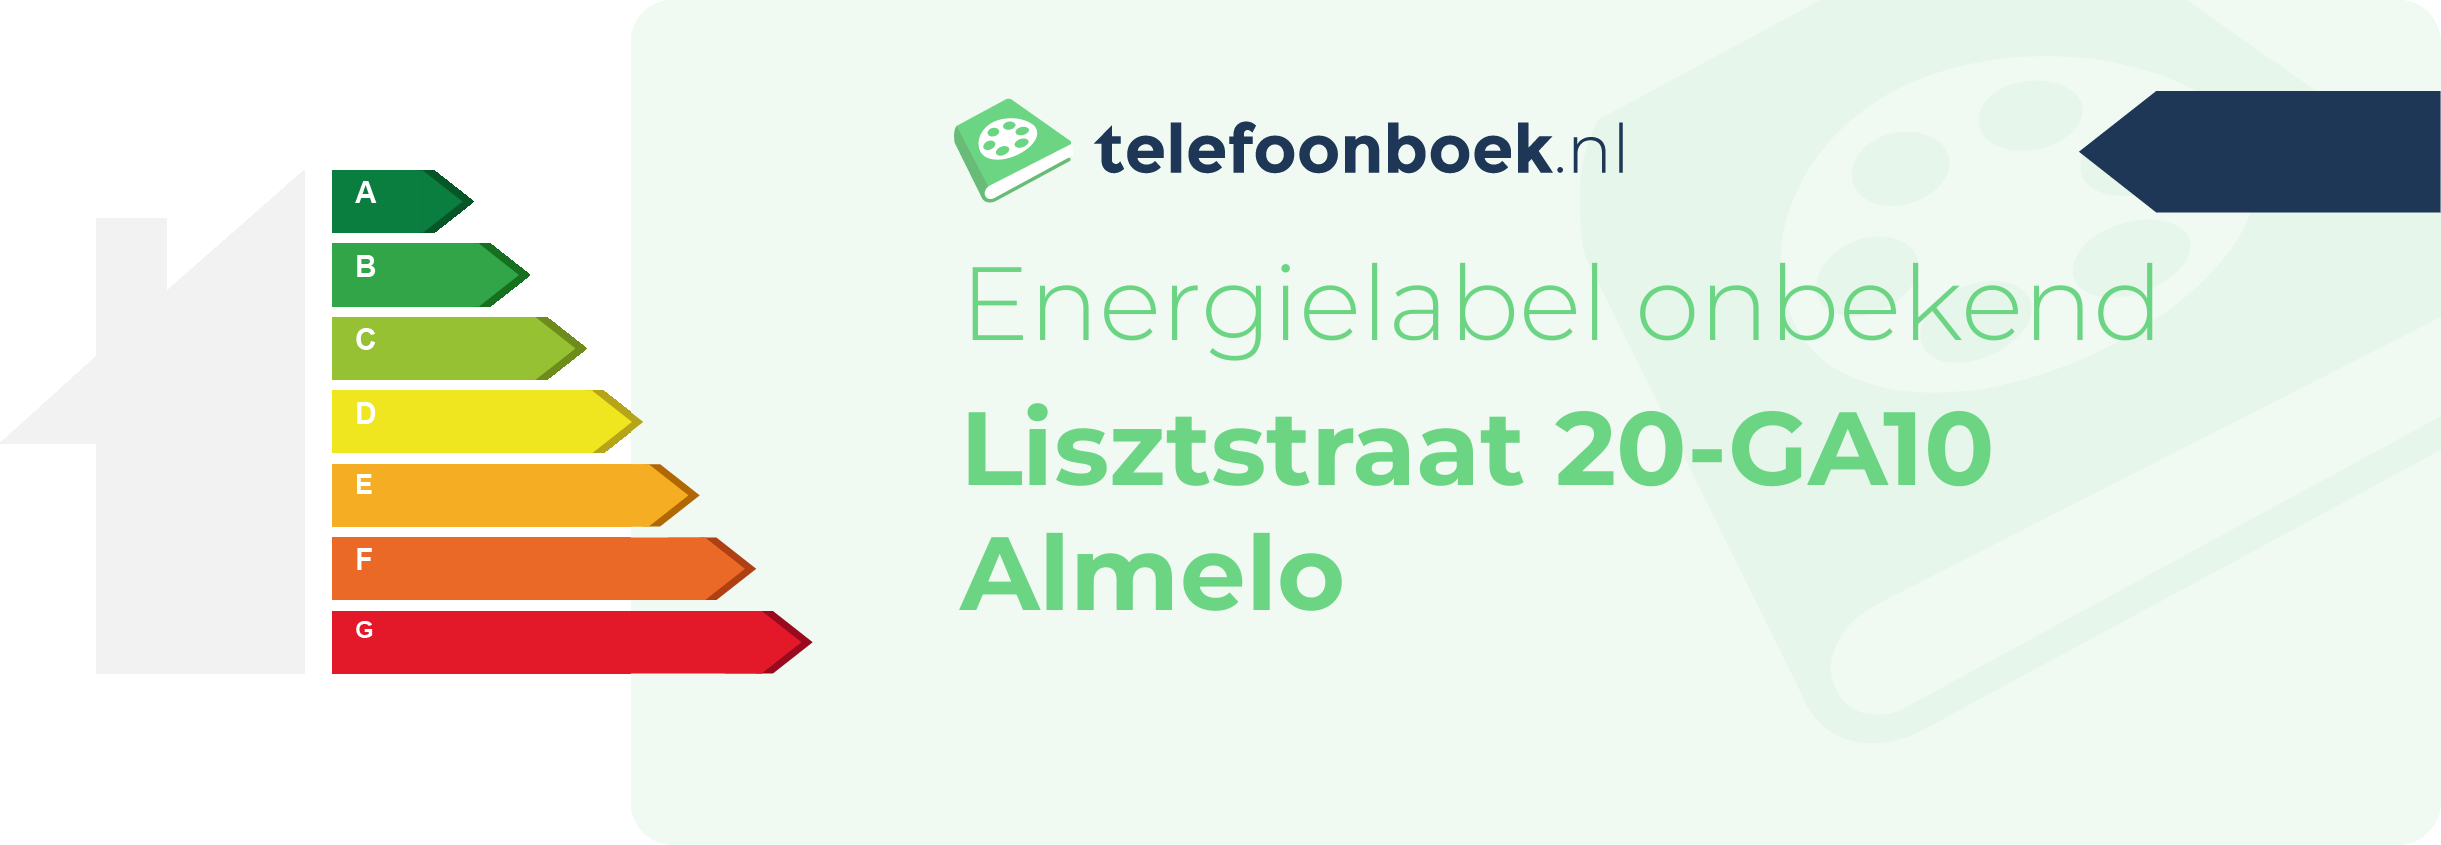 Energielabel Lisztstraat 20-GA10 Almelo